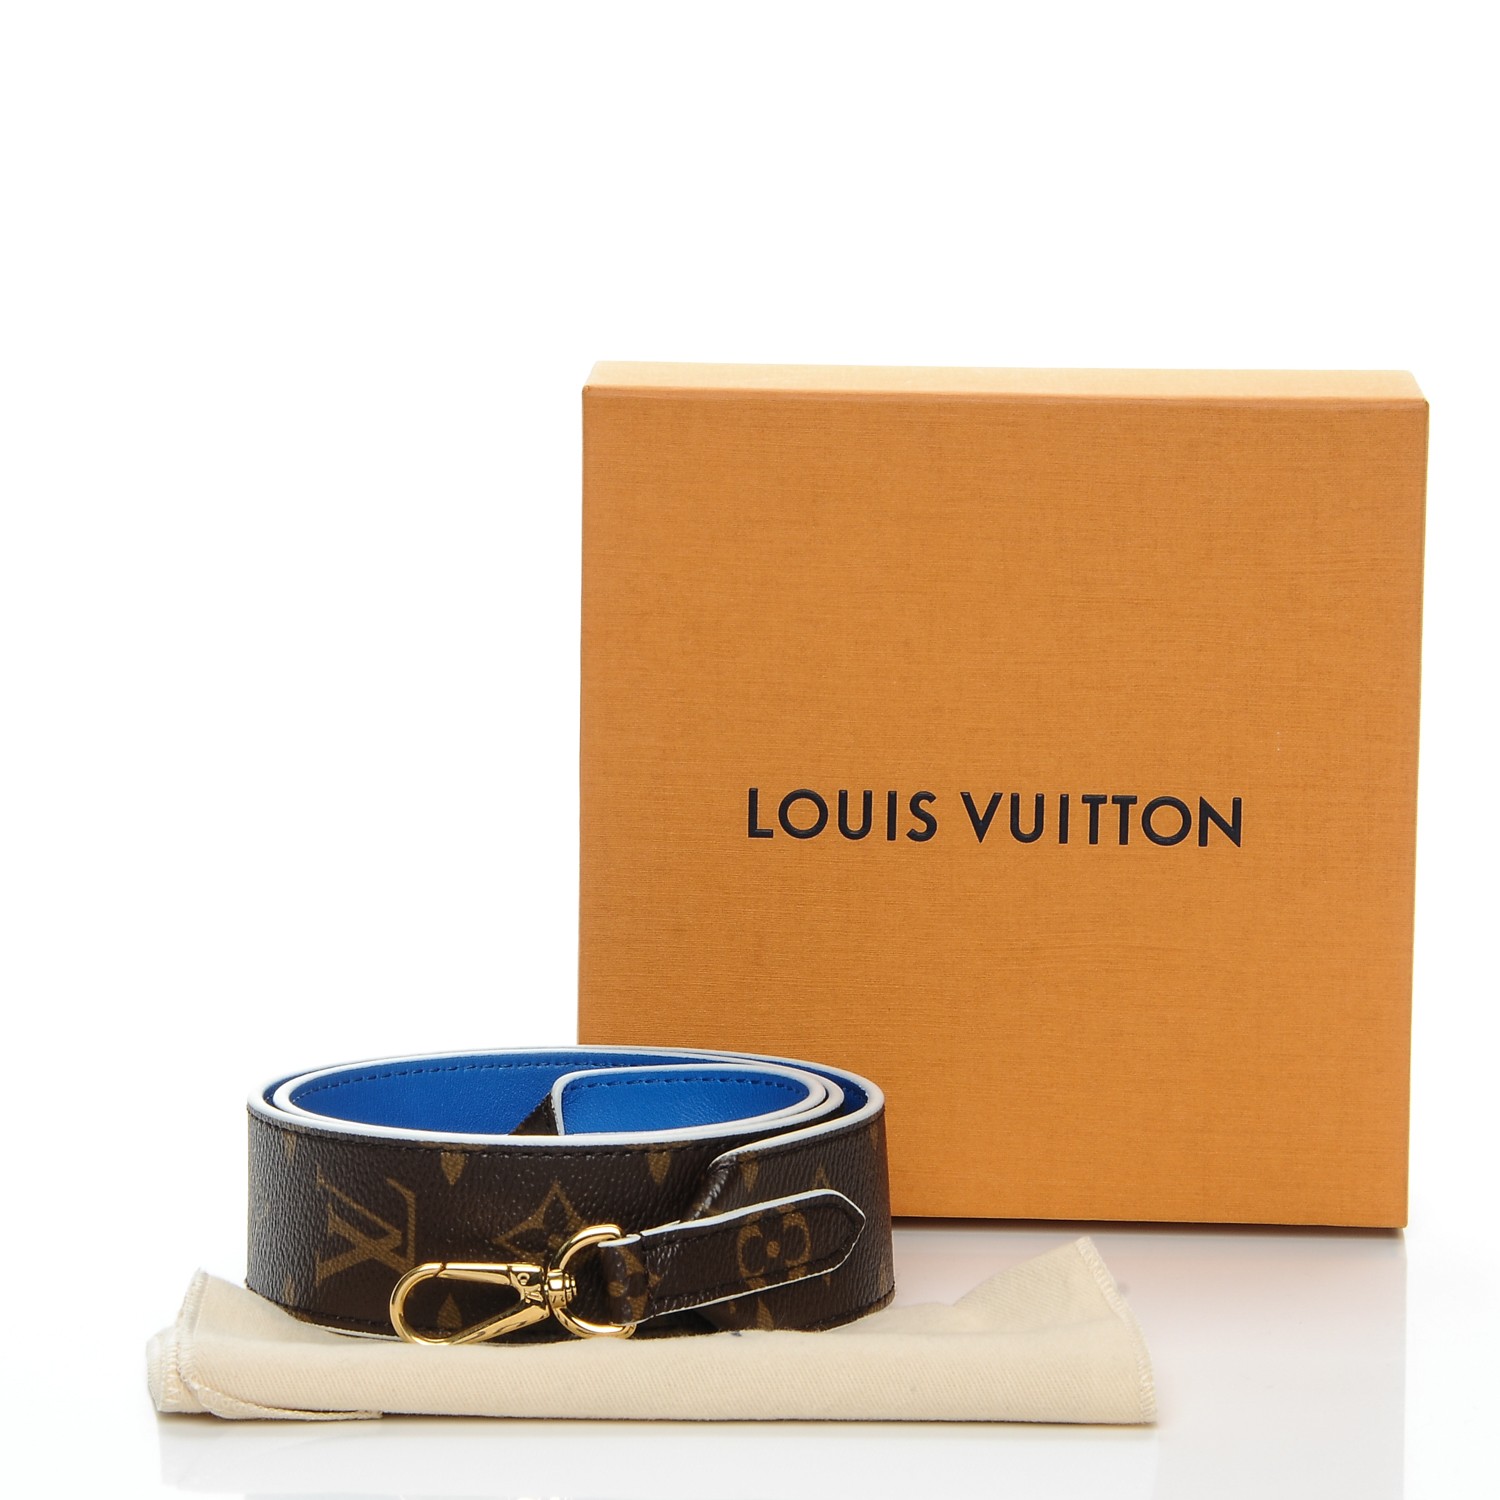 LOUIS VUITTON Monogram Bandouliere Shoulder Strap Blue 200985